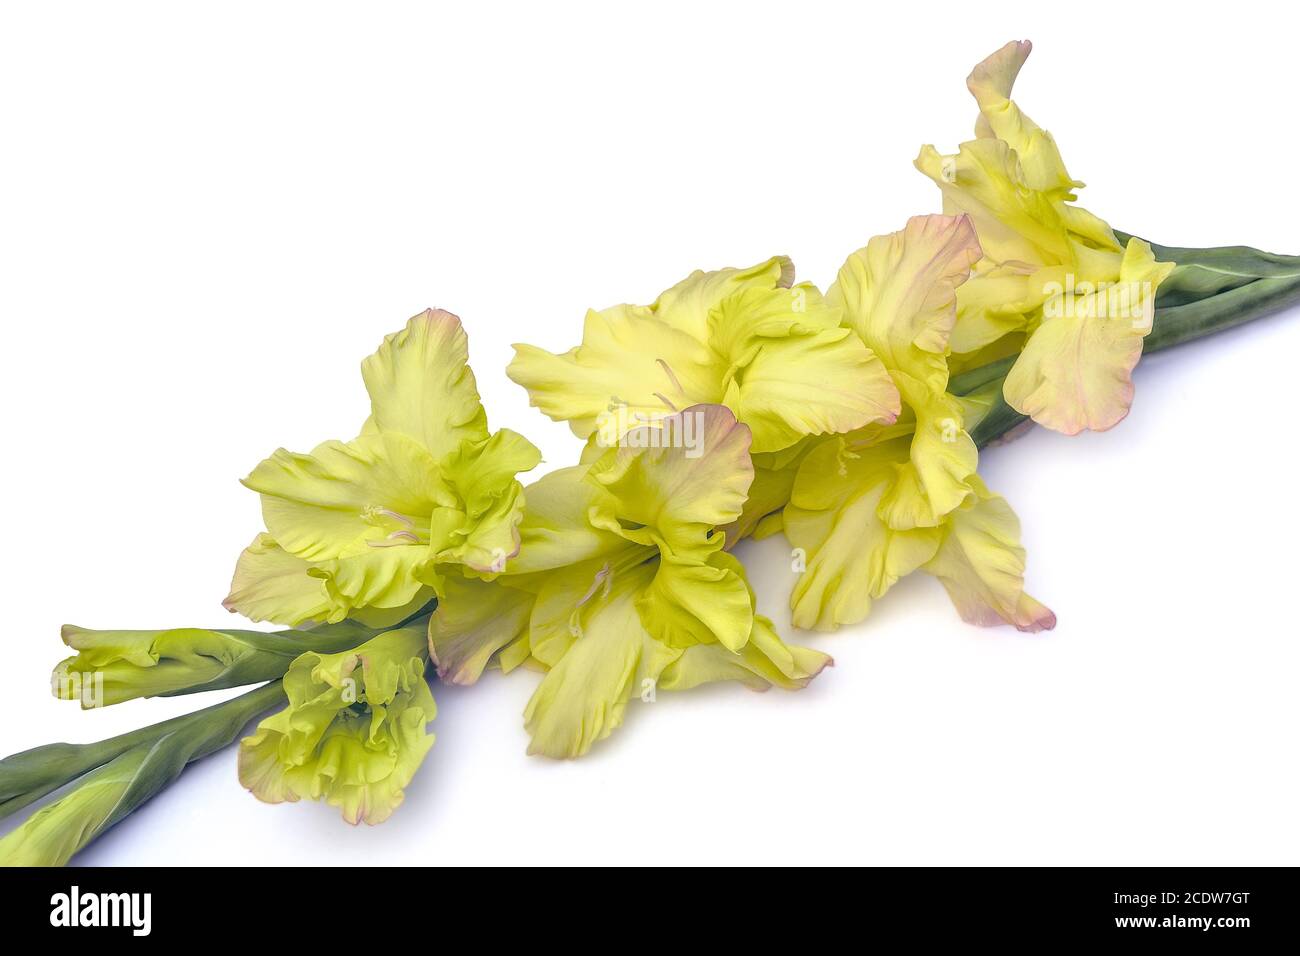 Singolo bel fiore giallo gladiolo isolato su sfondo bianco Foto Stock